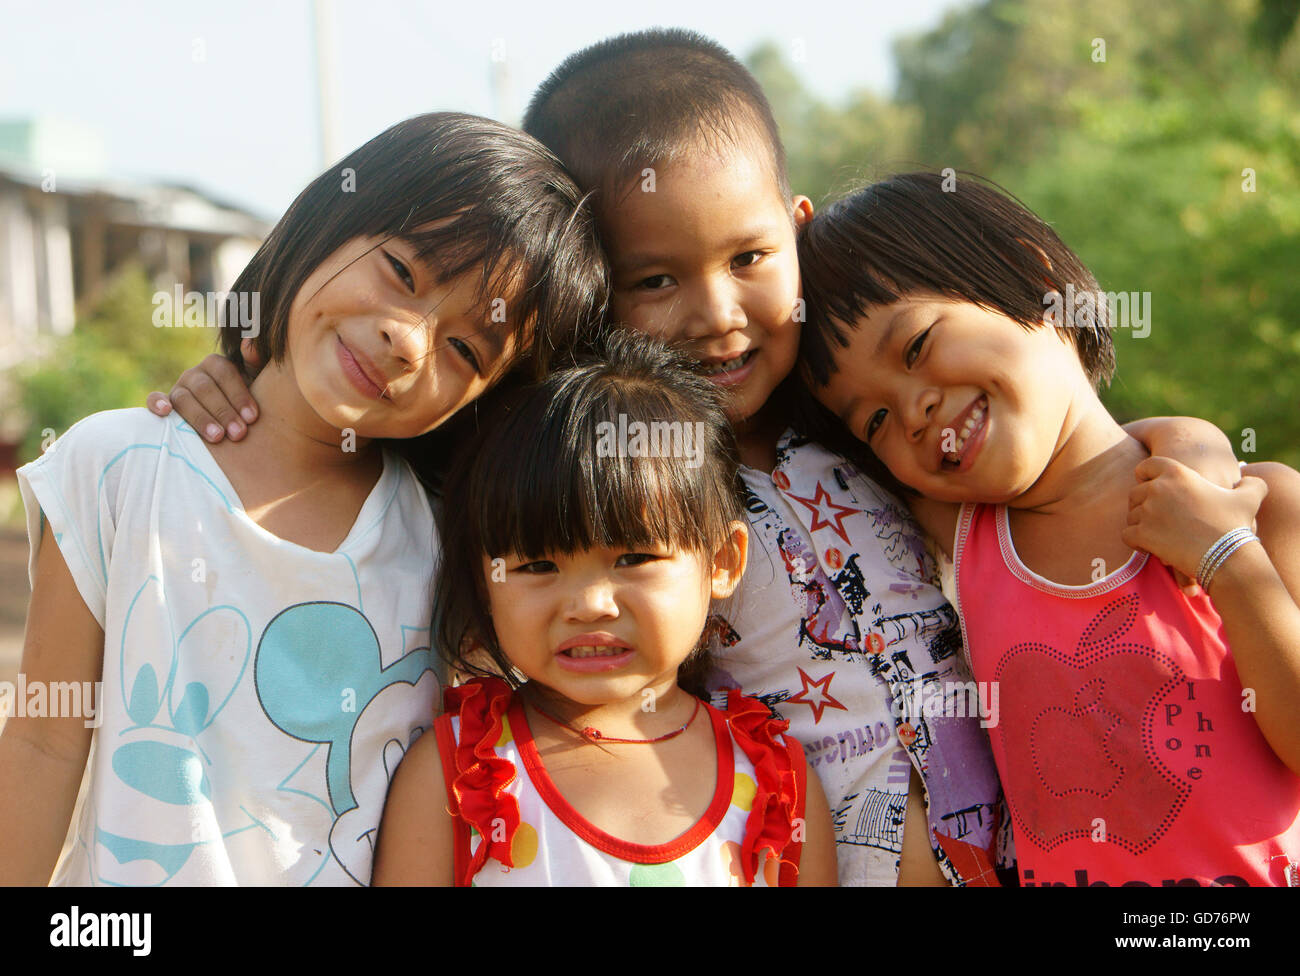 Gruppe von unbekannten asiatischen Kinder haben Spaß an vietnamesischen Land im sonnigen Tag Stockfoto